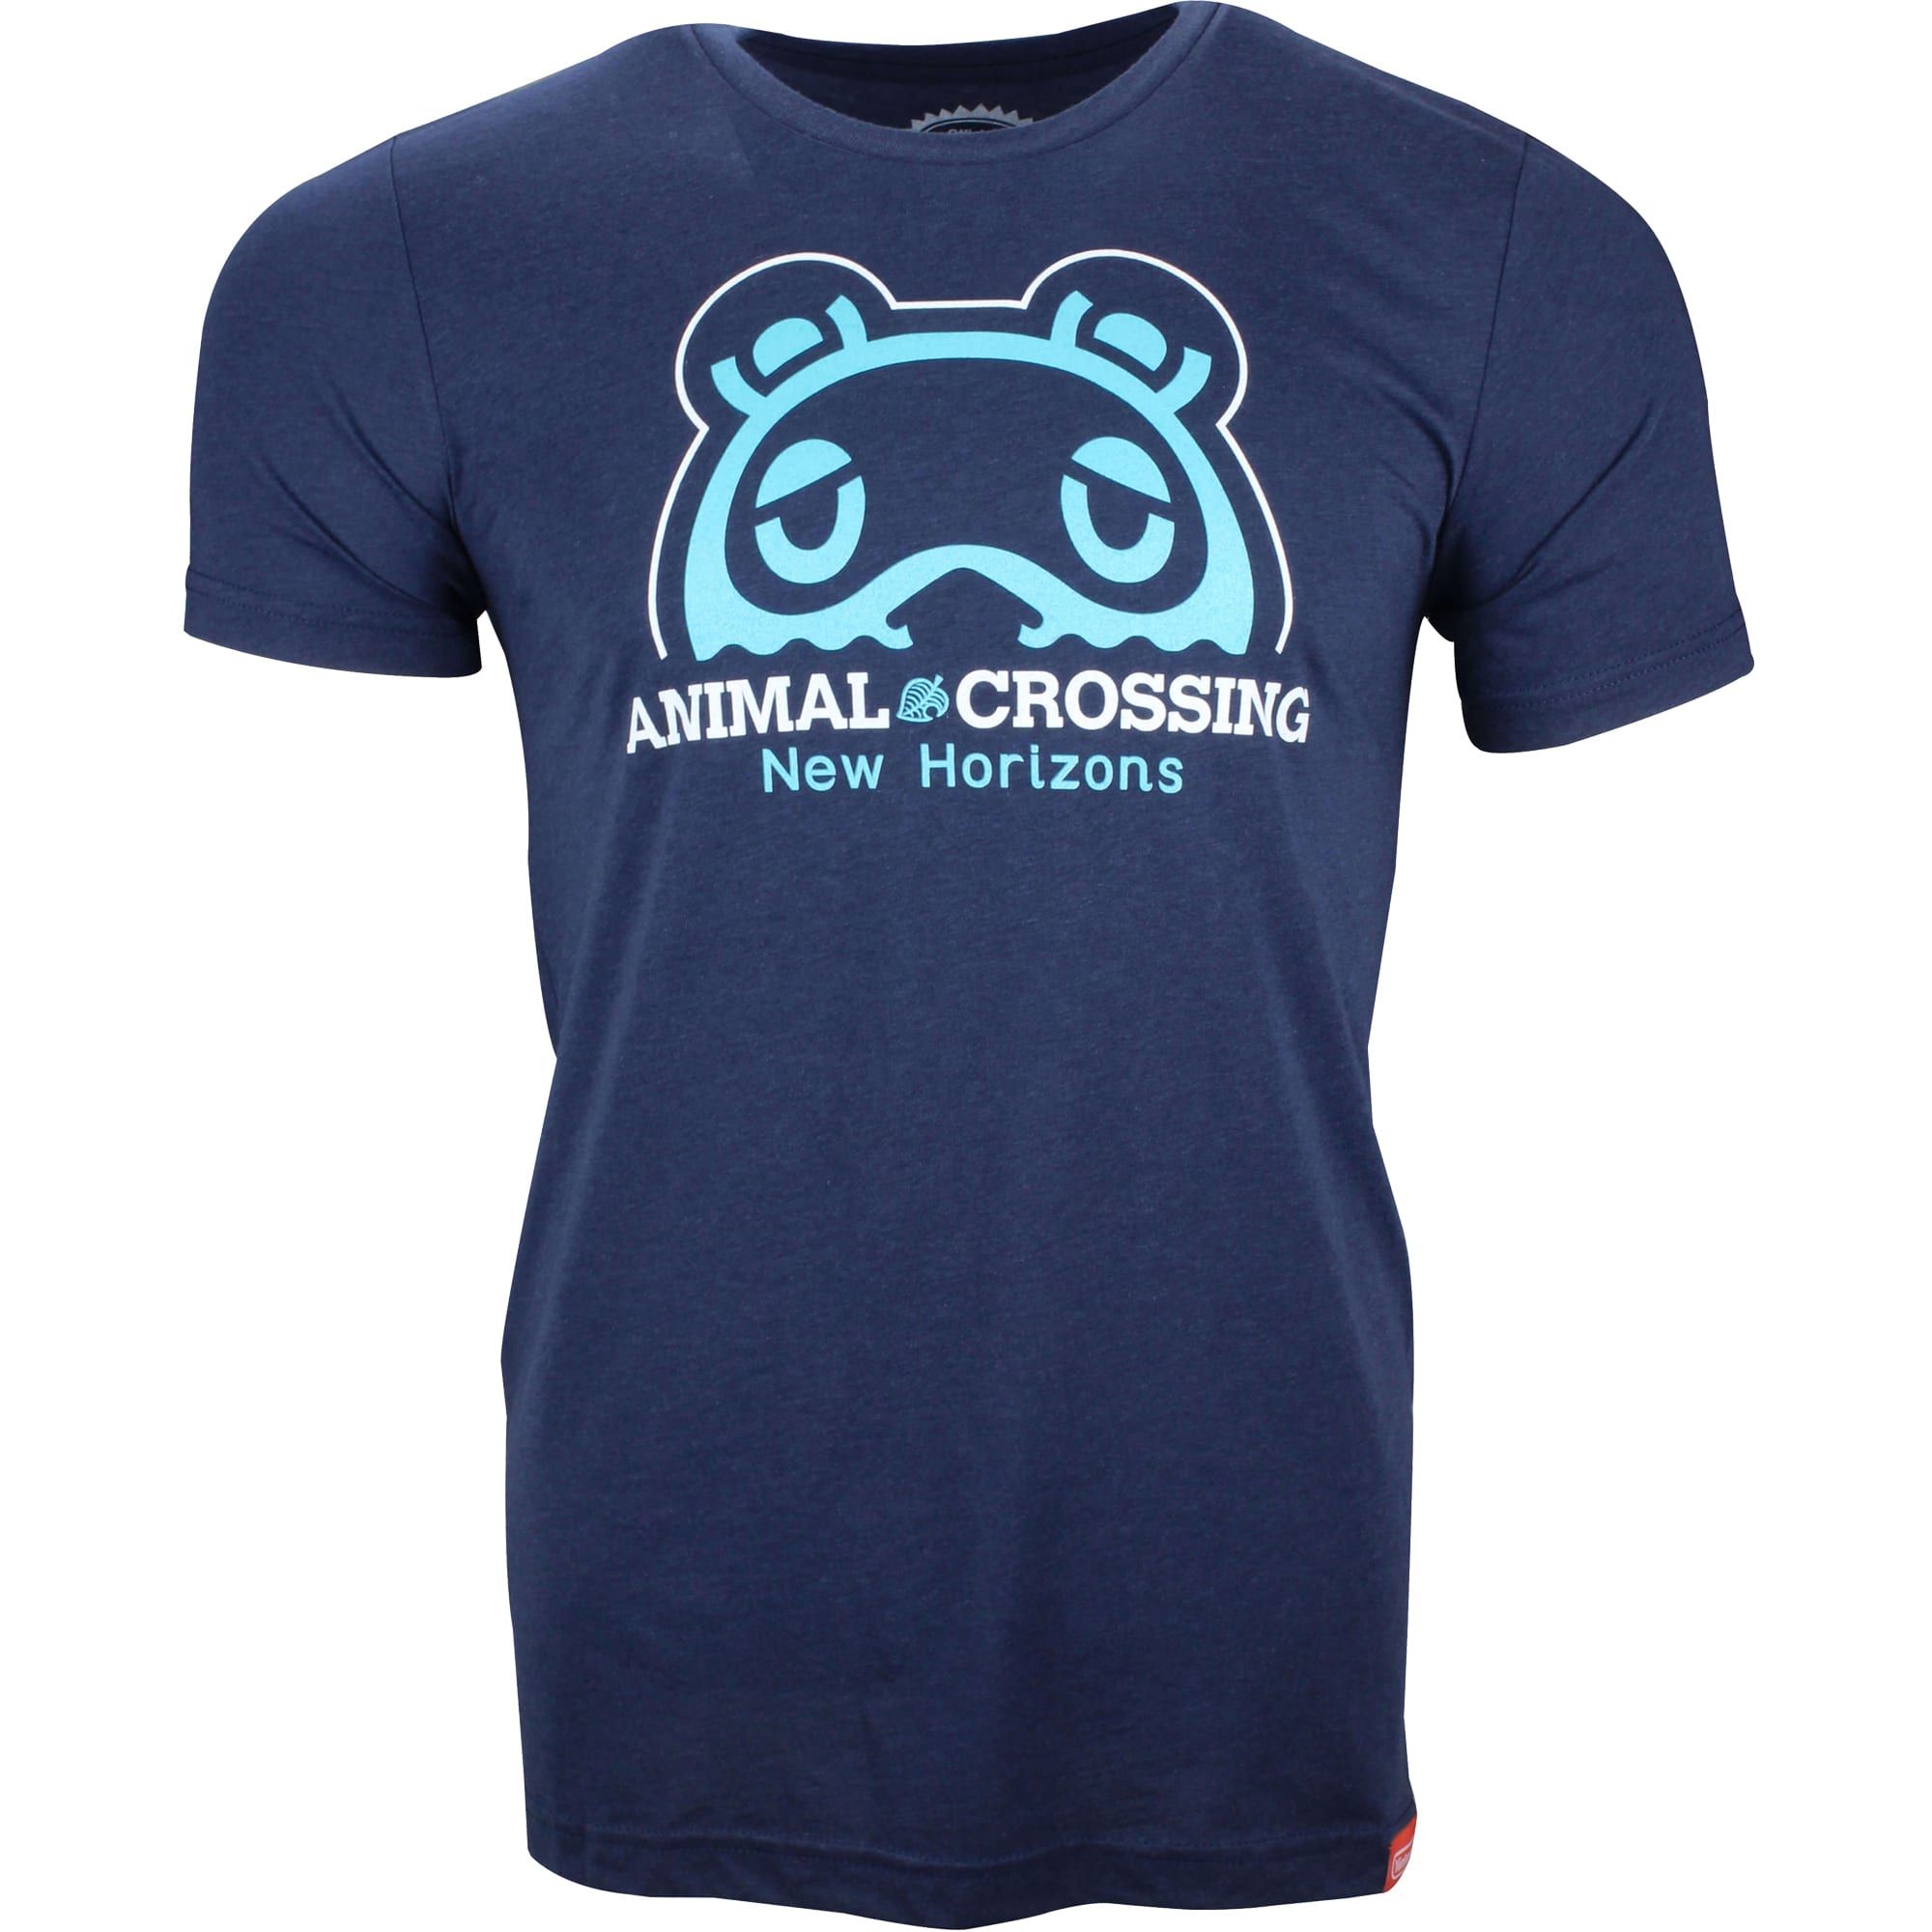 Animal Crossing - Tom Nook T-shirt - Navy Blue